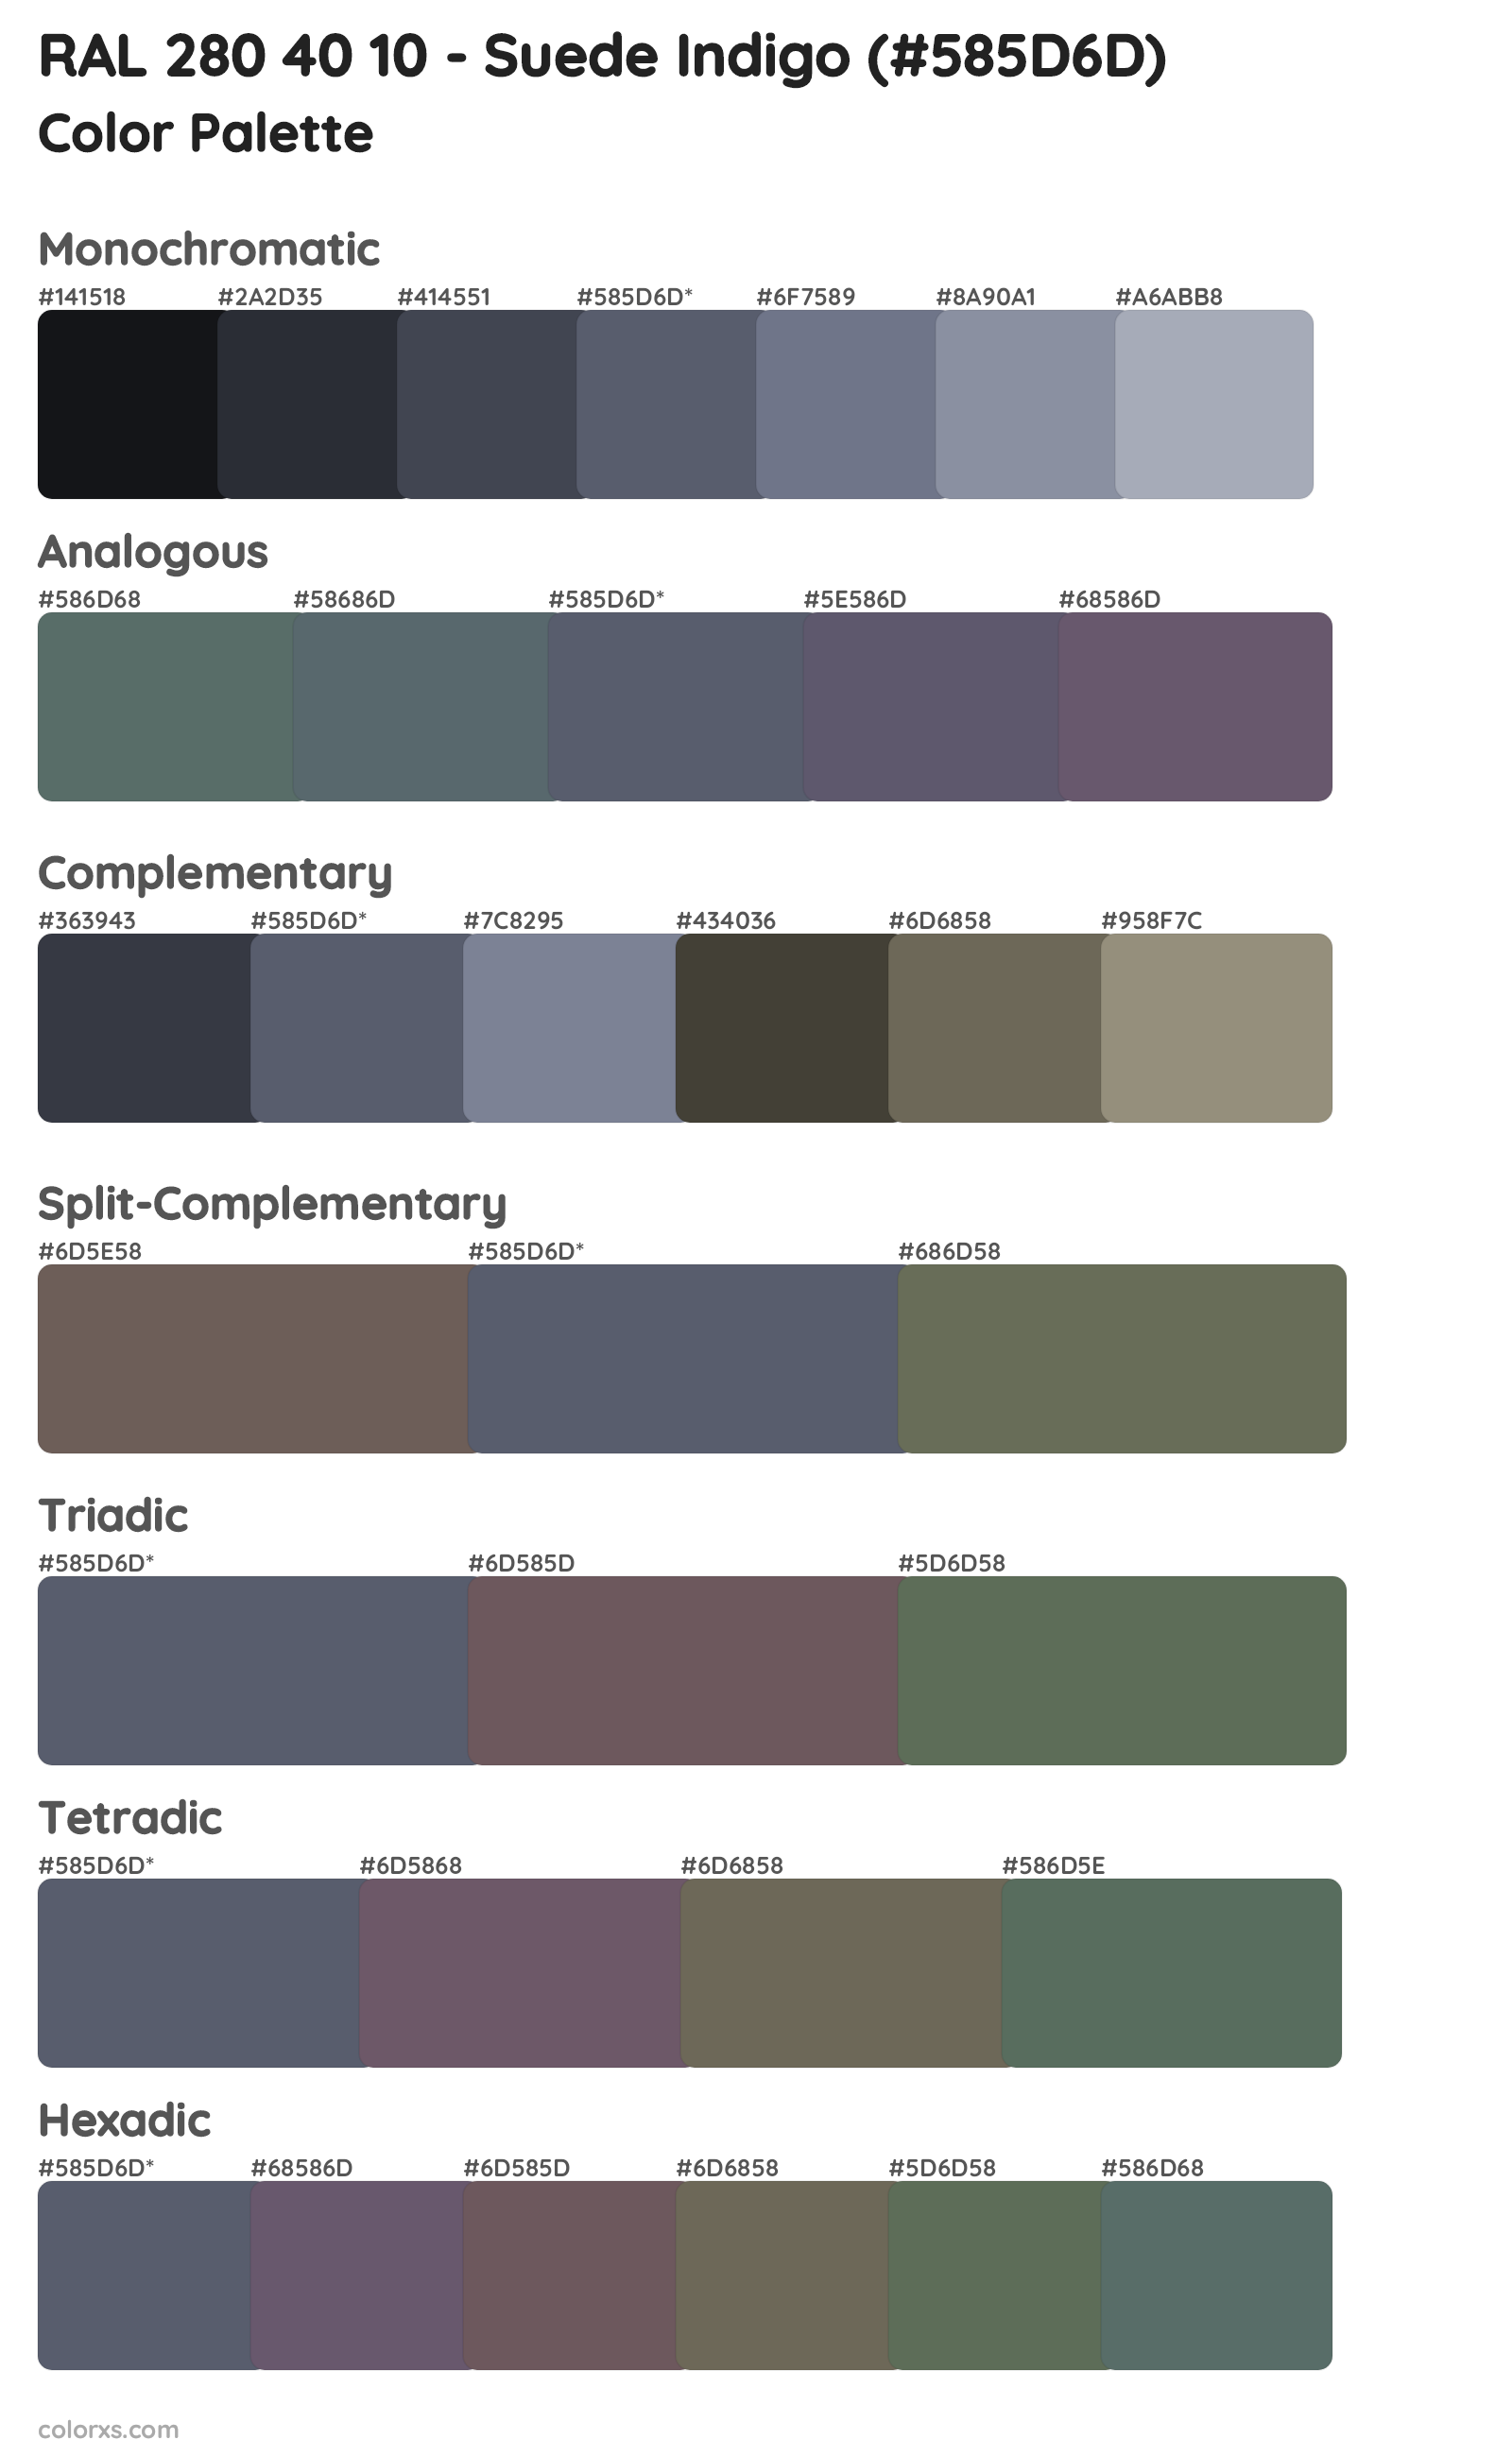 RAL 280 40 10 - Suede Indigo Color Scheme Palettes